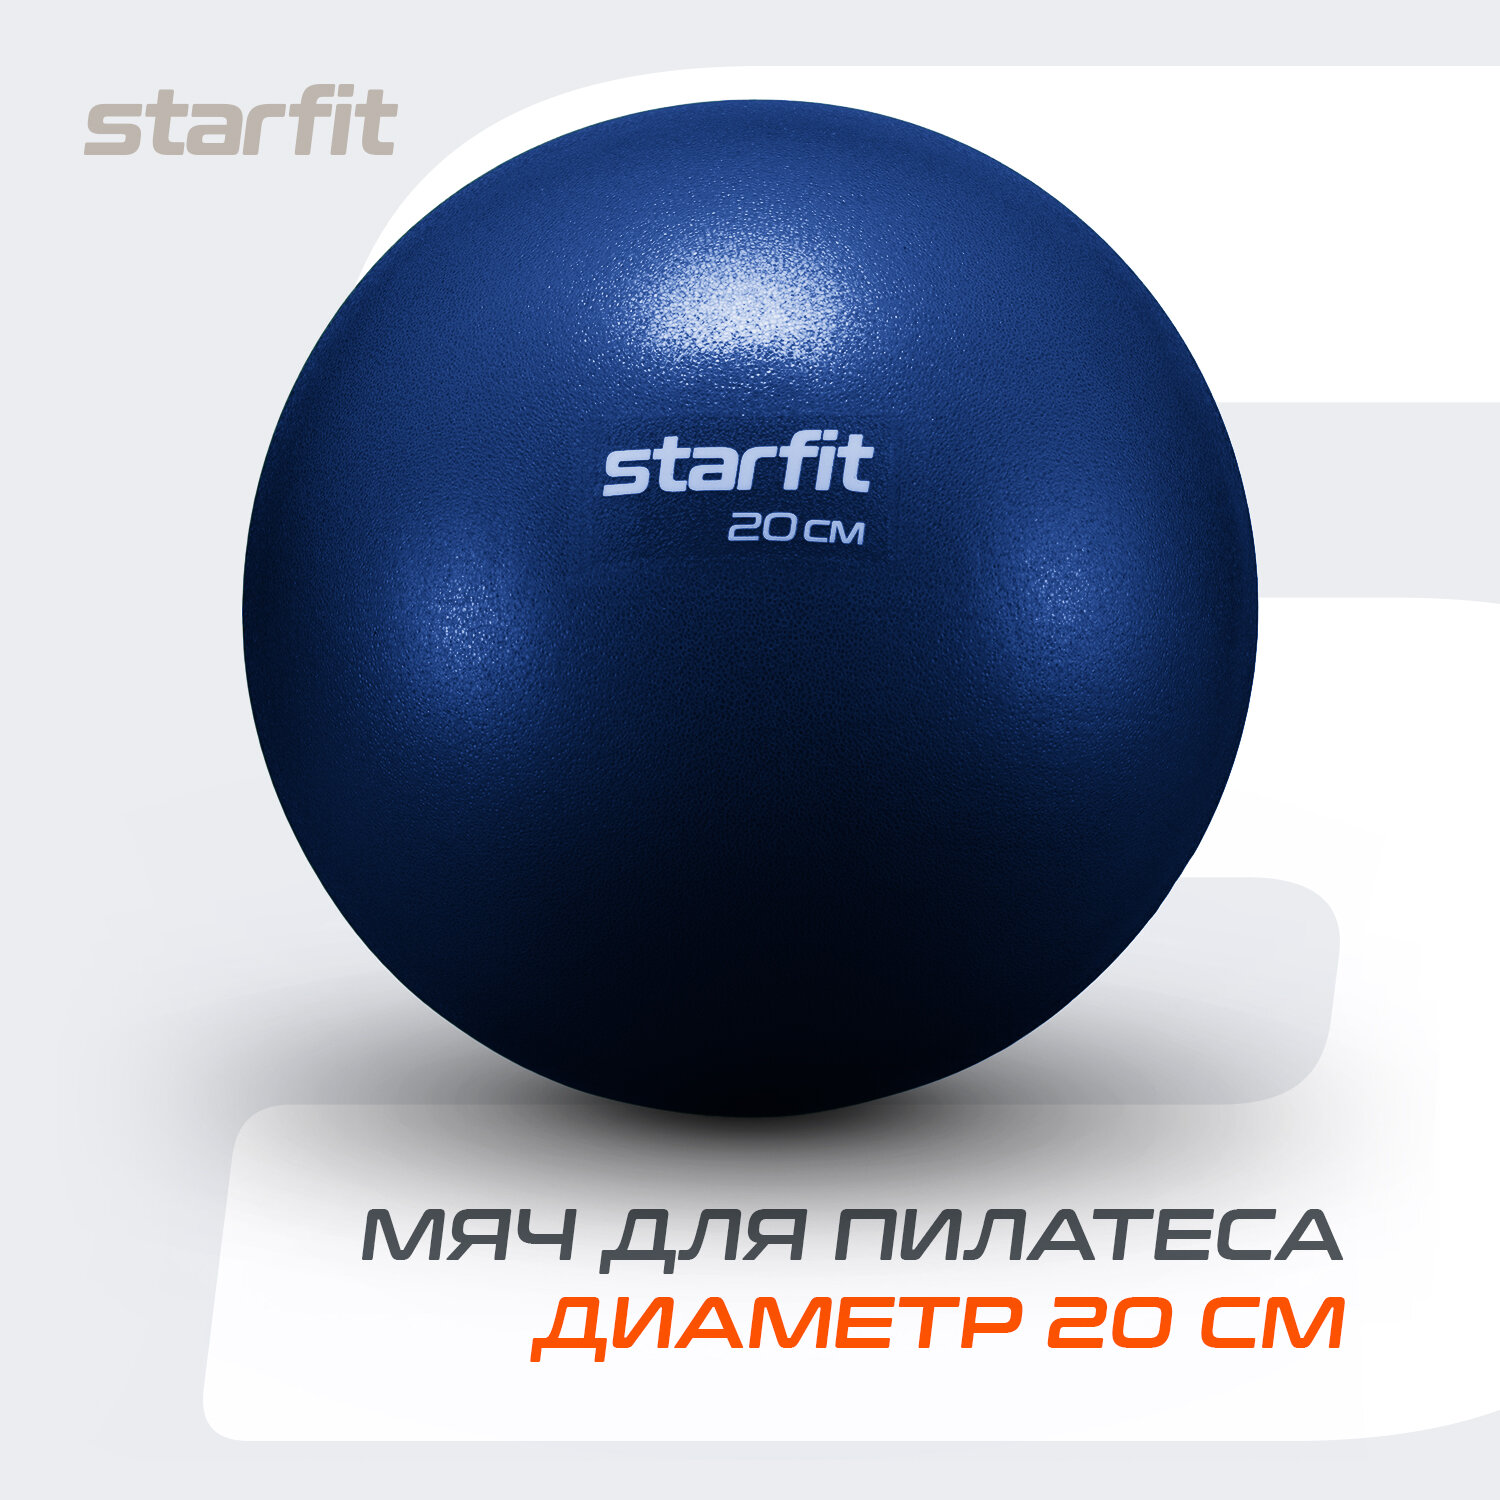 Мяч для пилатеса STARFIT GB-902 20 см, темно-синий